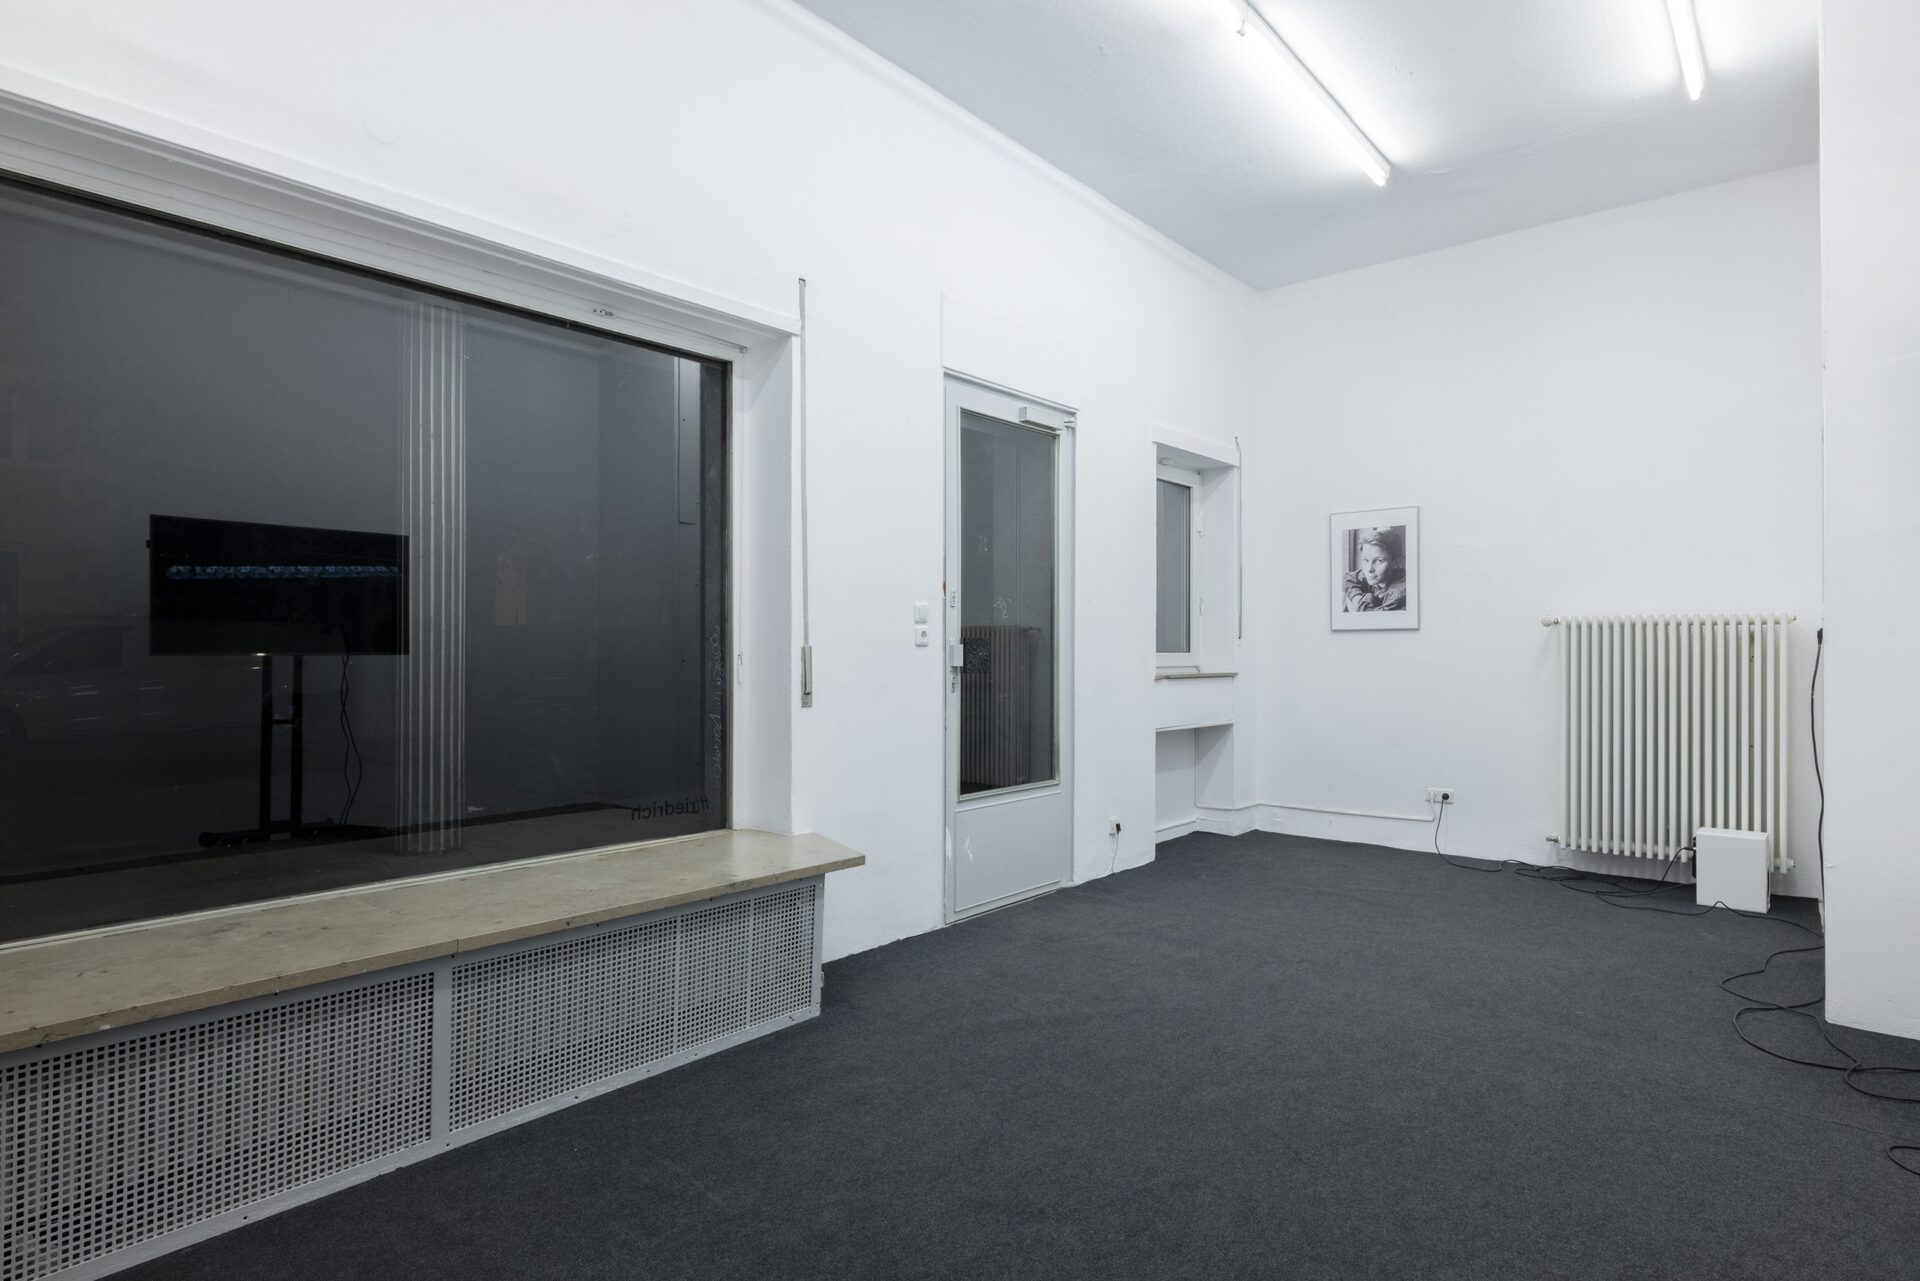 Hugo Bausch Belbachir, Partition (Grey), 2022, grey carpet flooring